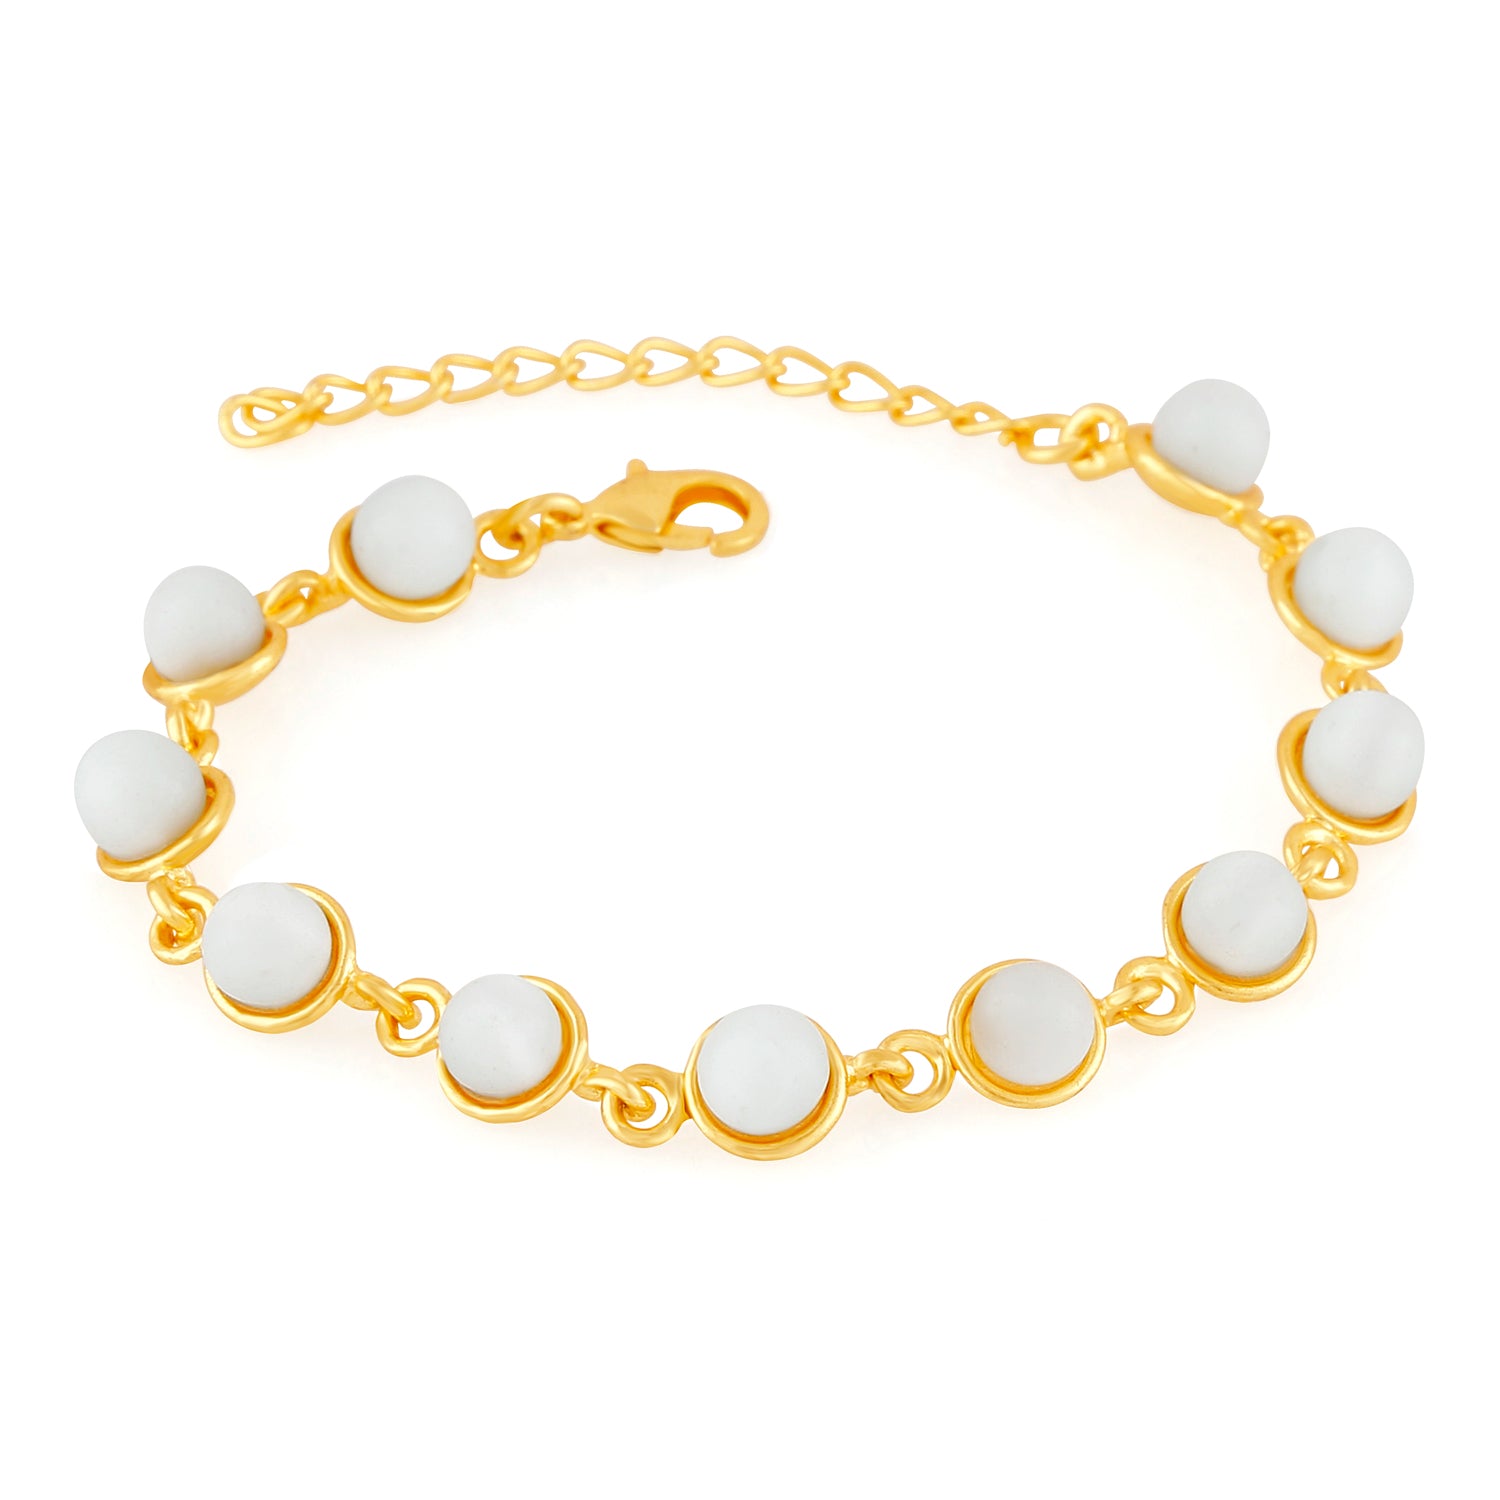 Ethereal White Monalisa Bracelet